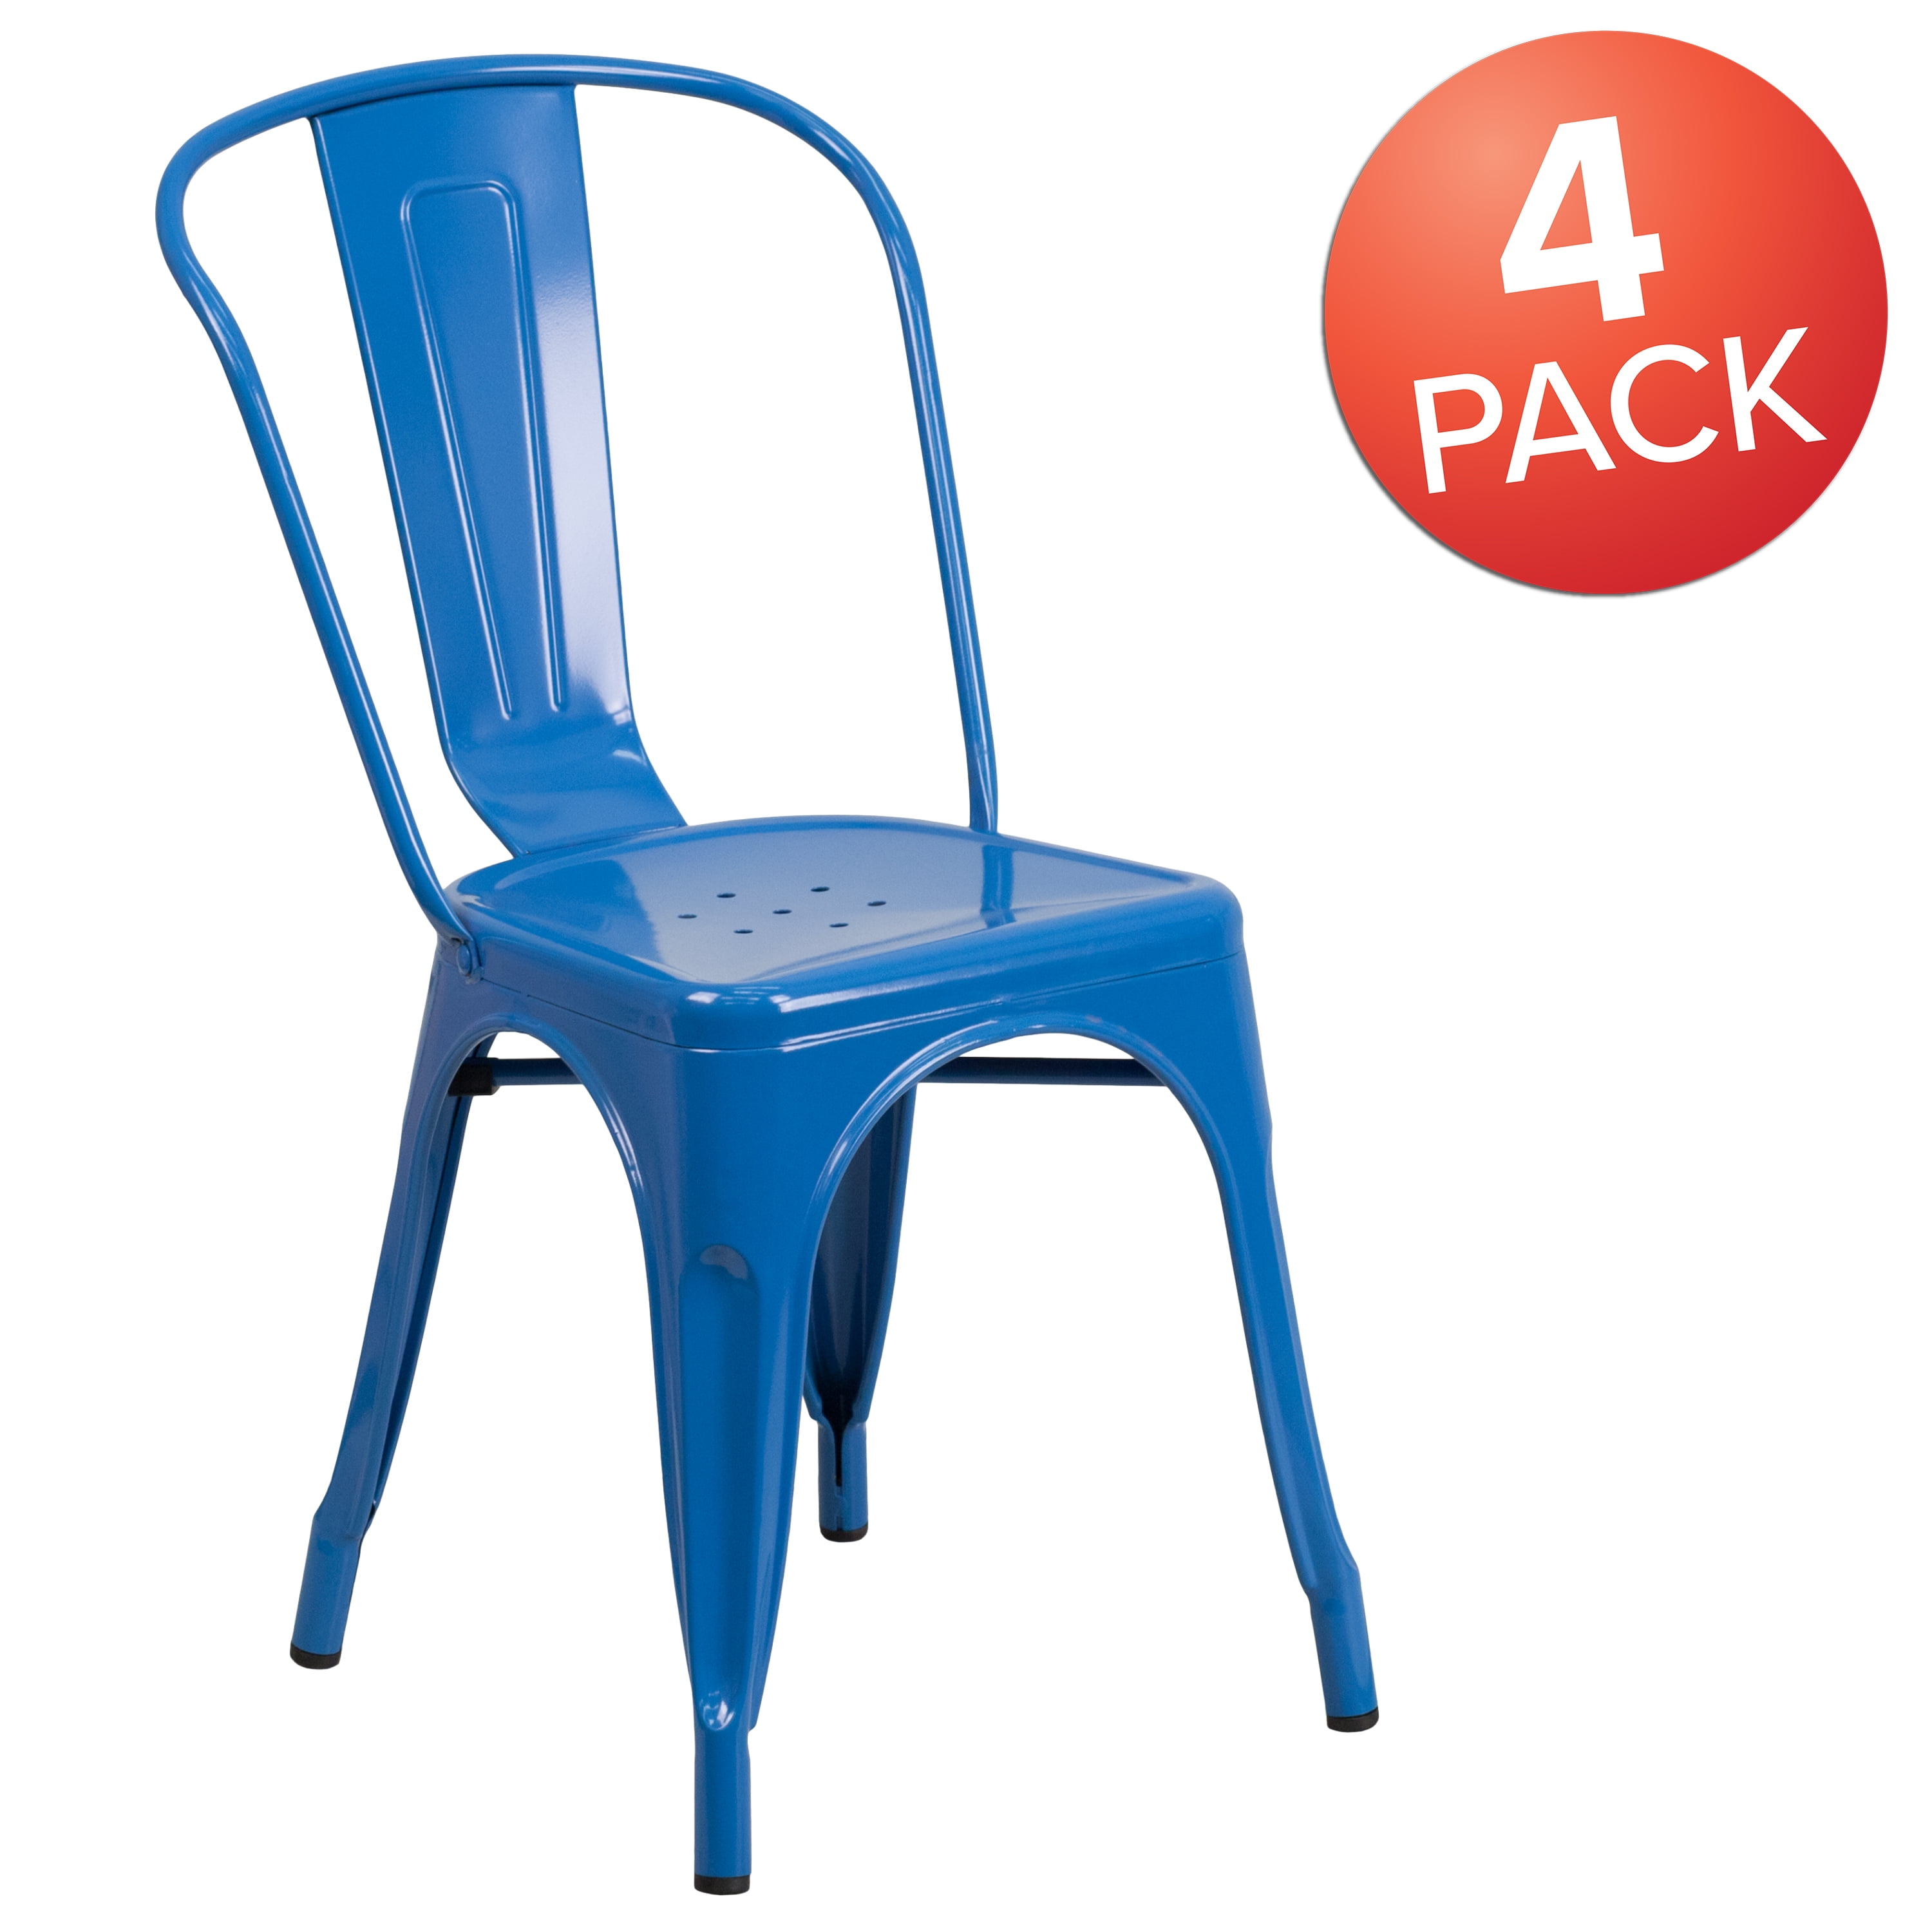 Flash Furniture 4 Pk Distressed Green Metal Indoor-Outdoor Stackable Chair